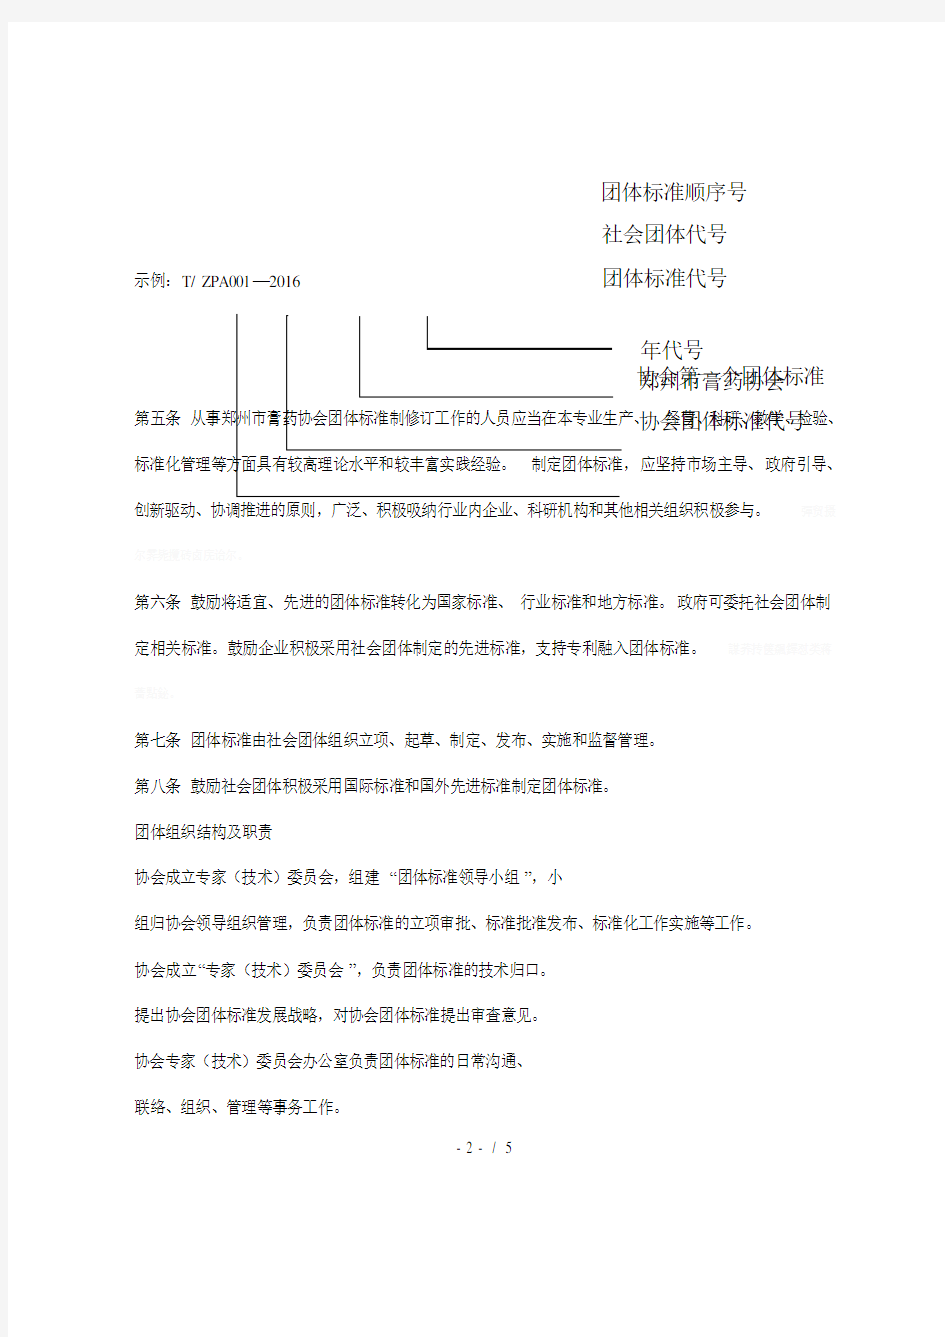 郑州市膏药协会团体标准管理办法(试行)